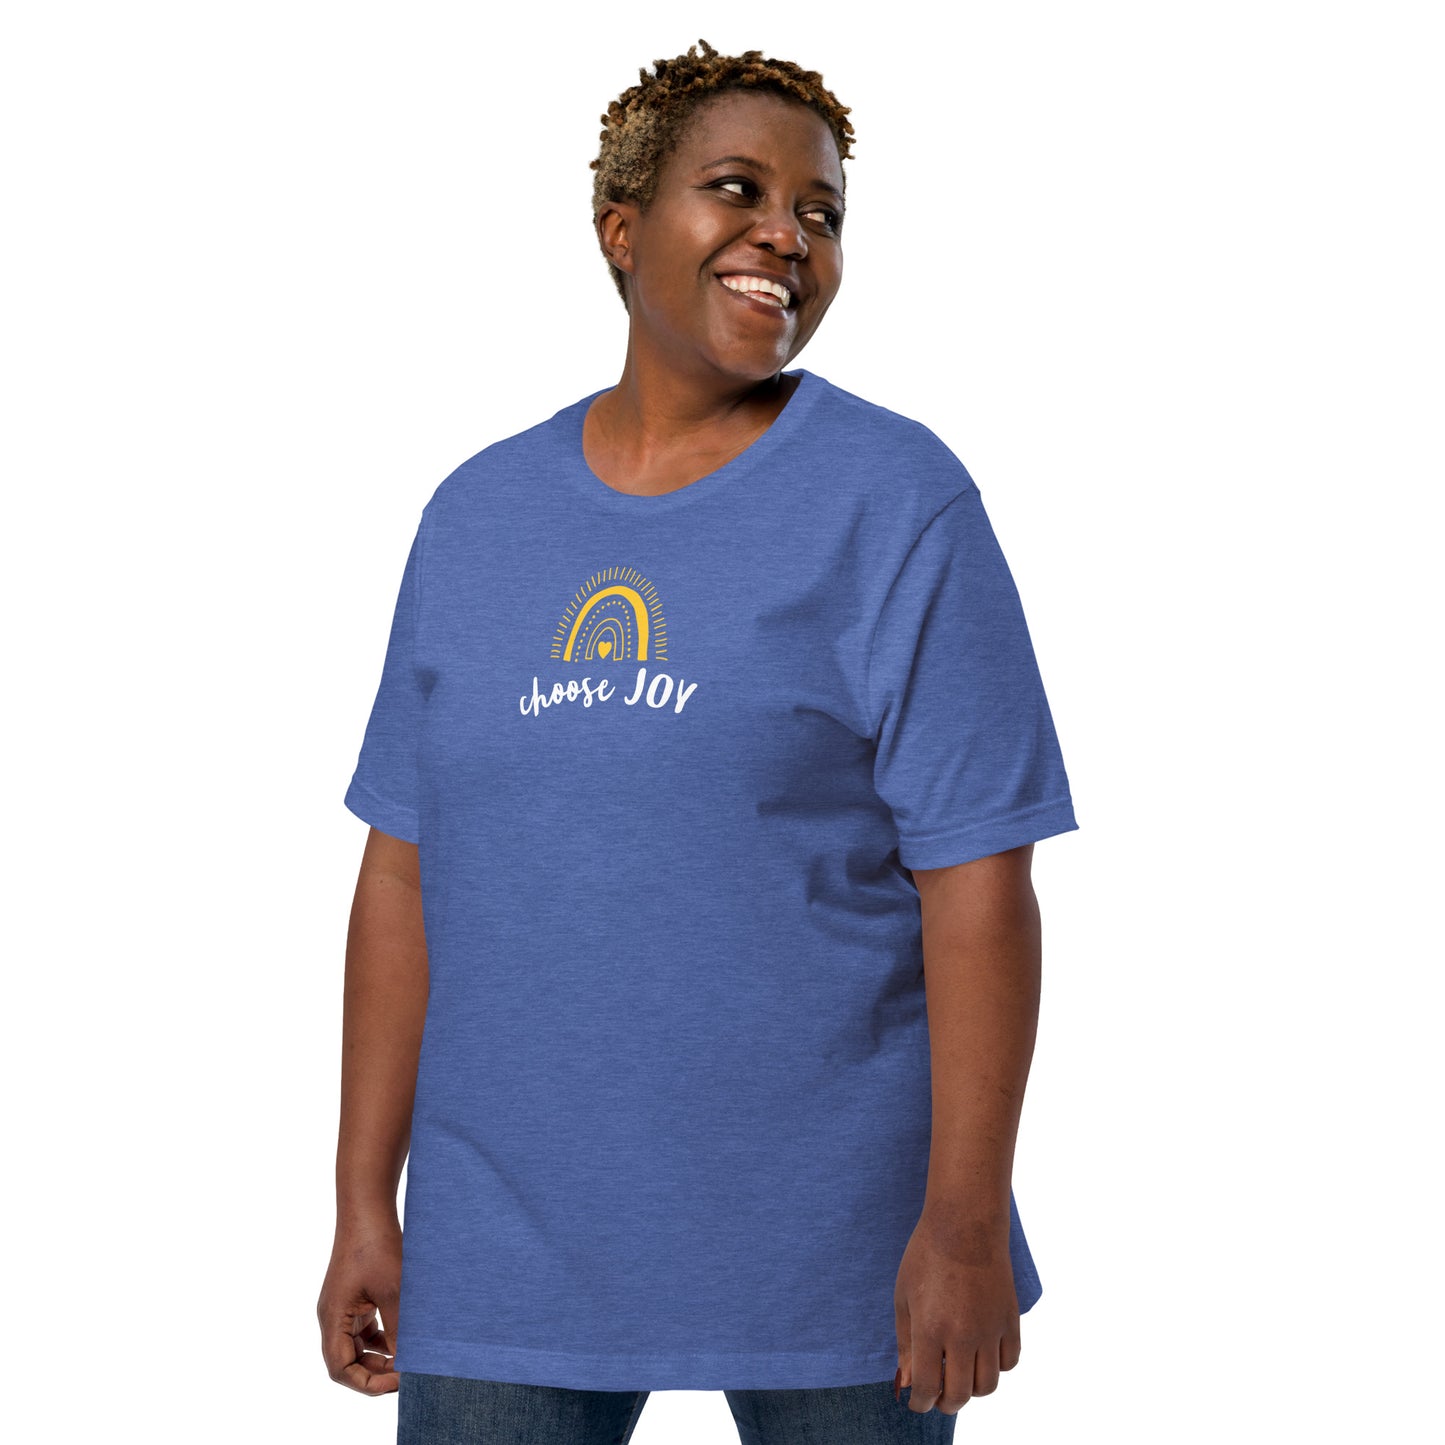 Choose Joy (sunshine) unisex t-shirt